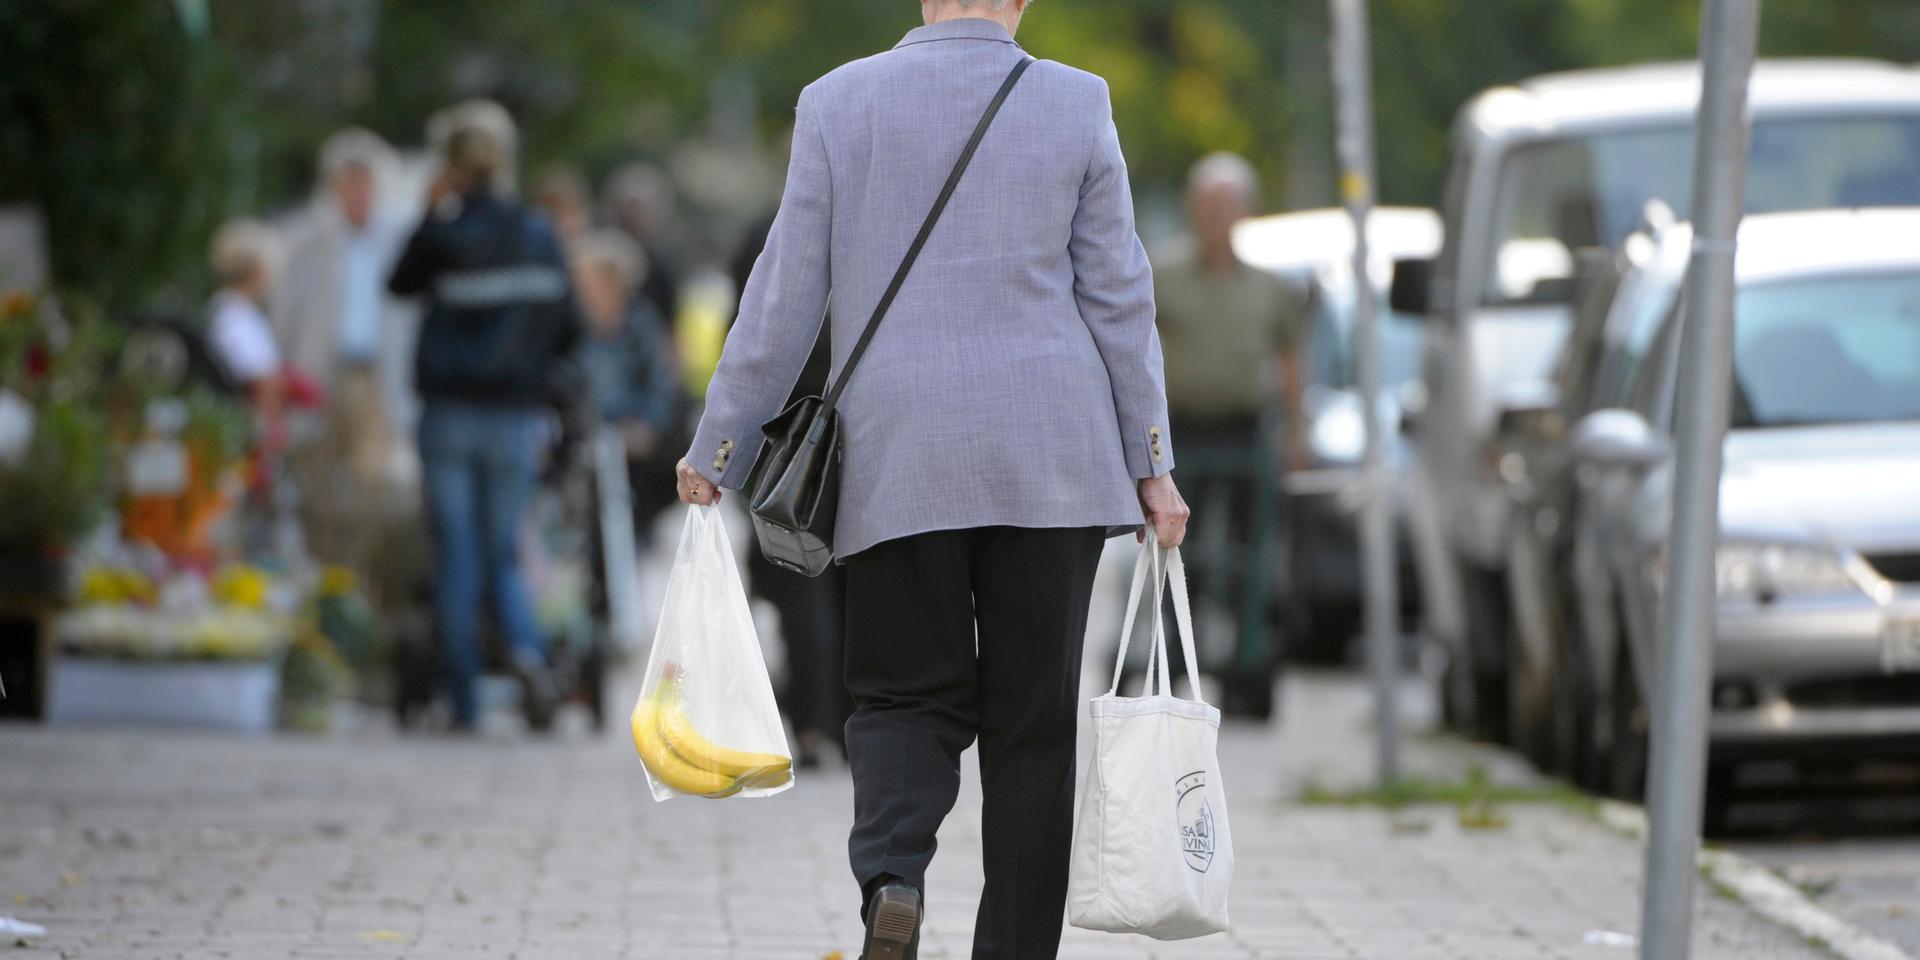 Ett tillskott på 1 000 kronor per månad bör – om reformen införs – av rättviseskäl gälla samtliga pensionärer i Sverige, tycker insändarskribenten.